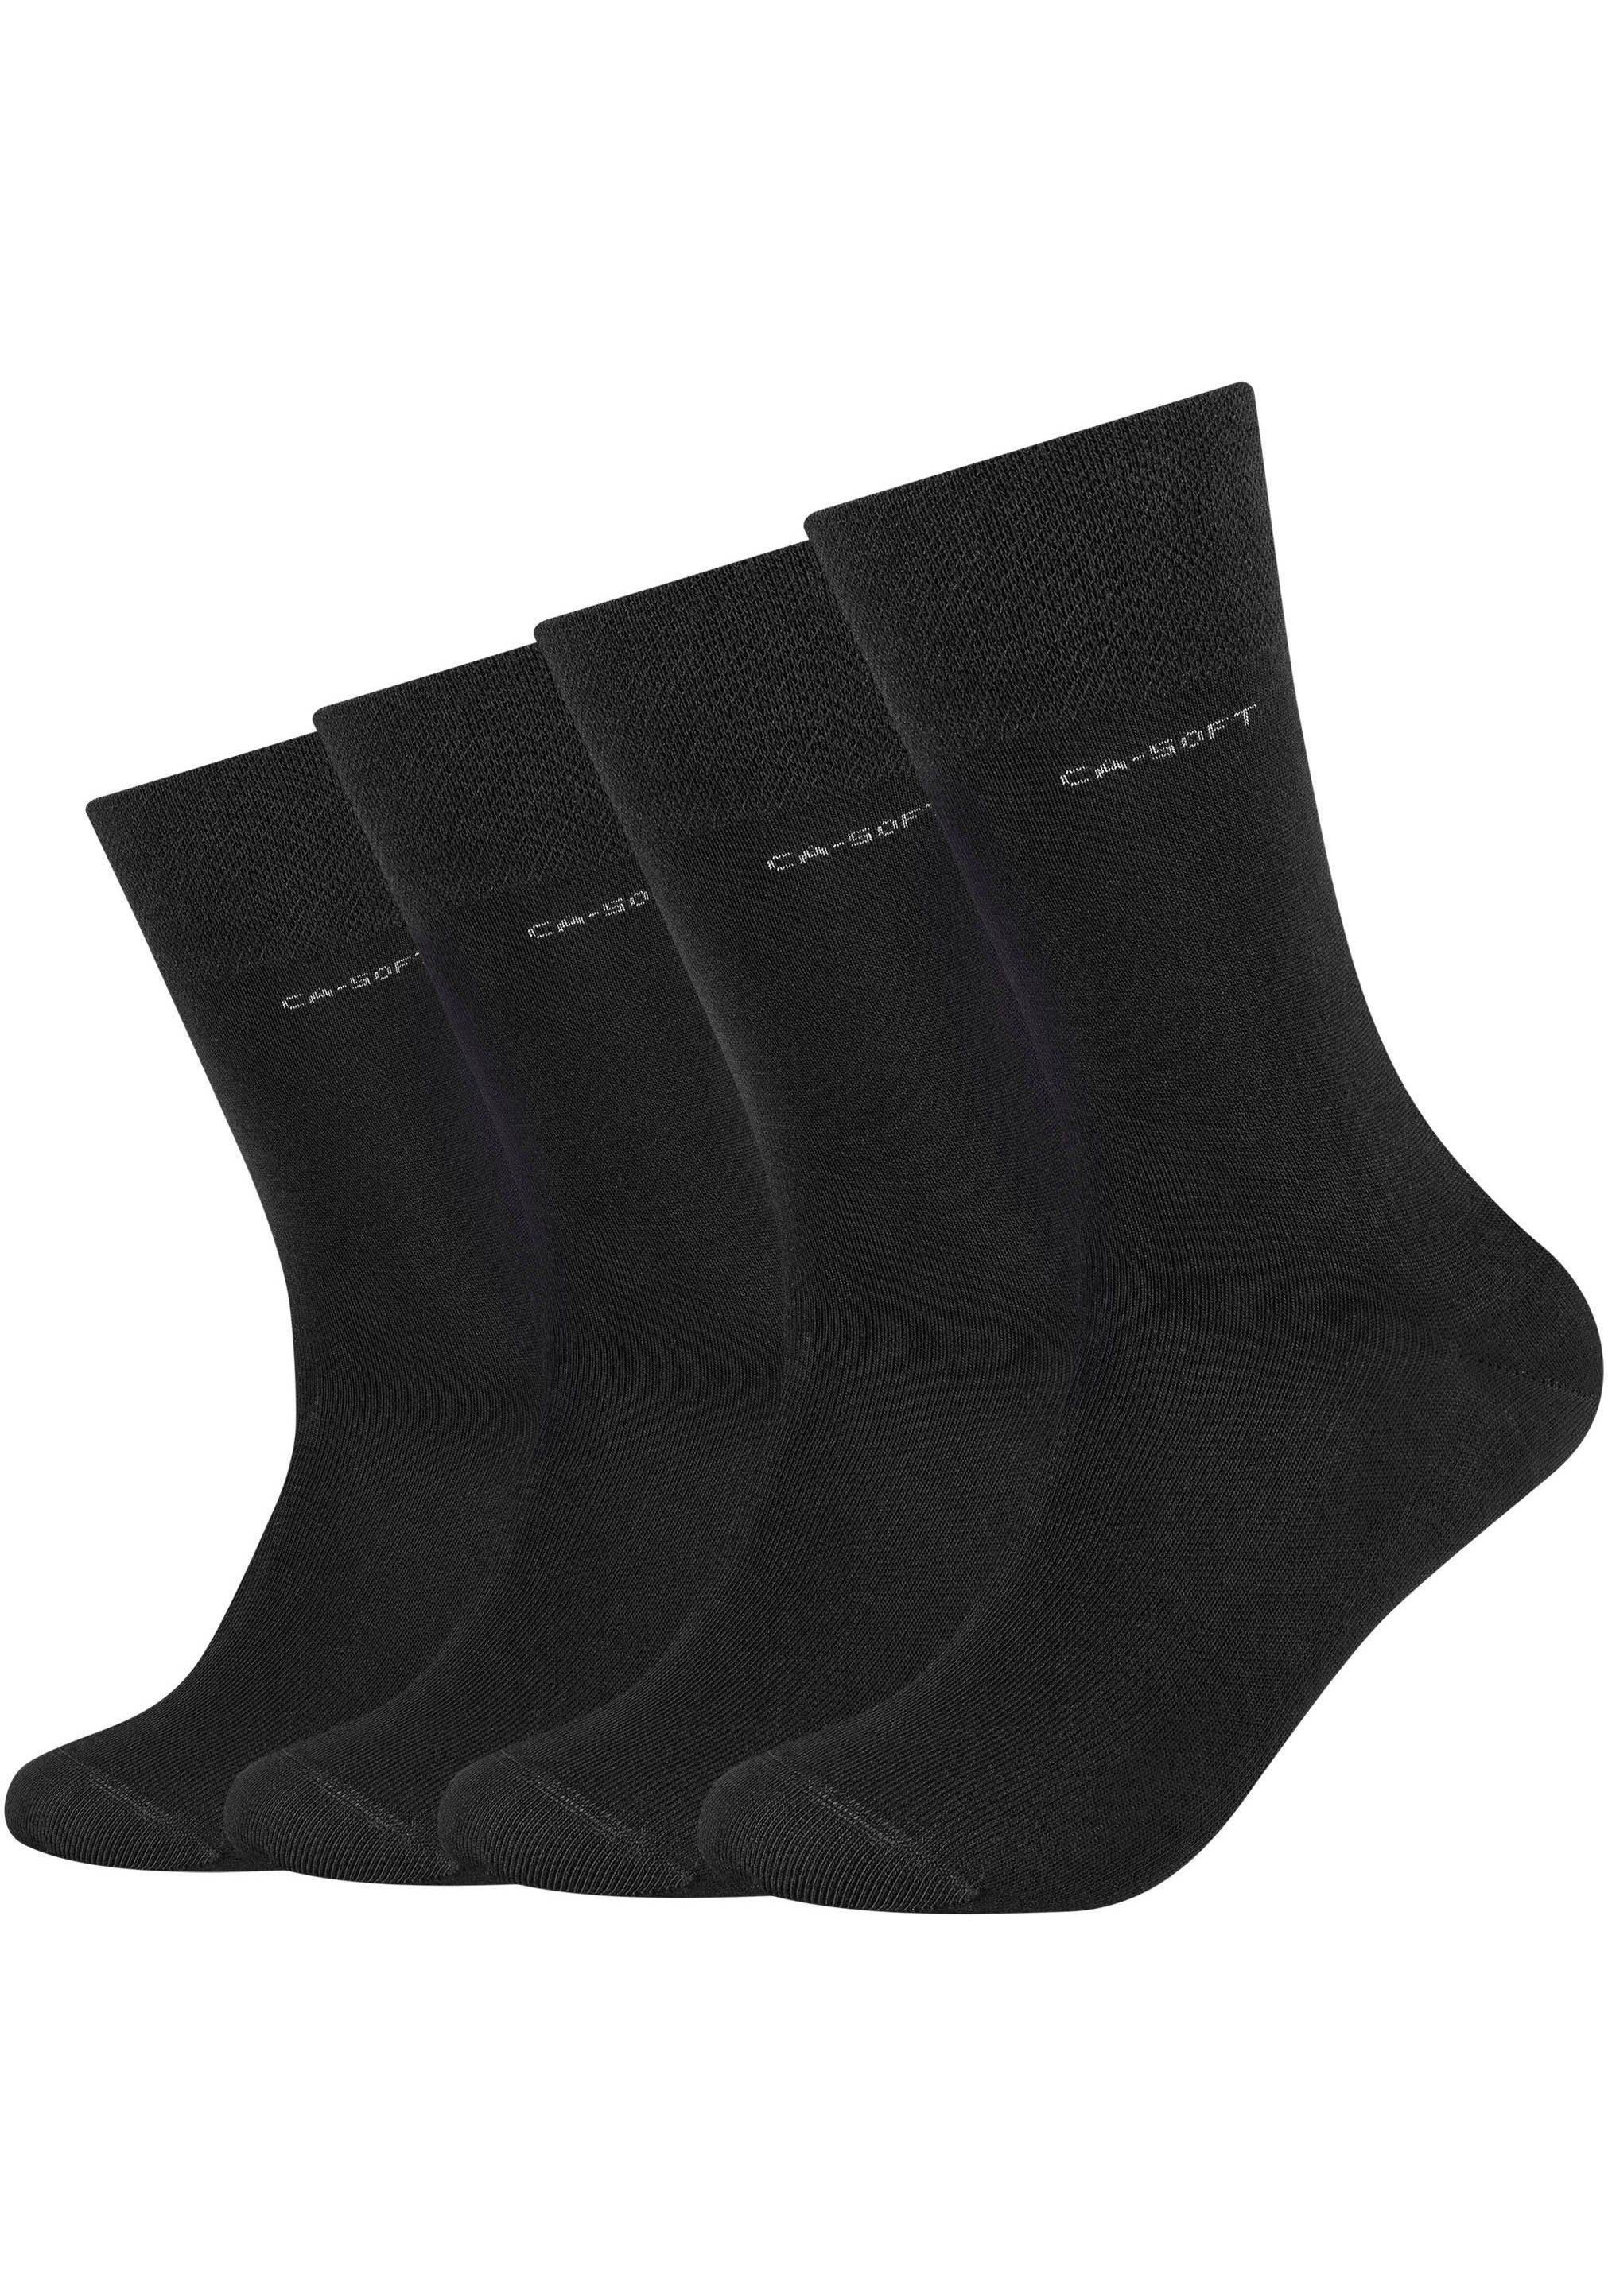 Camano Socken (Packung, 4-Paar) Mit verstärktem Fersen- und Zehenbereich,  Handgekettelte Zehennähten für hohen Tragekomfort